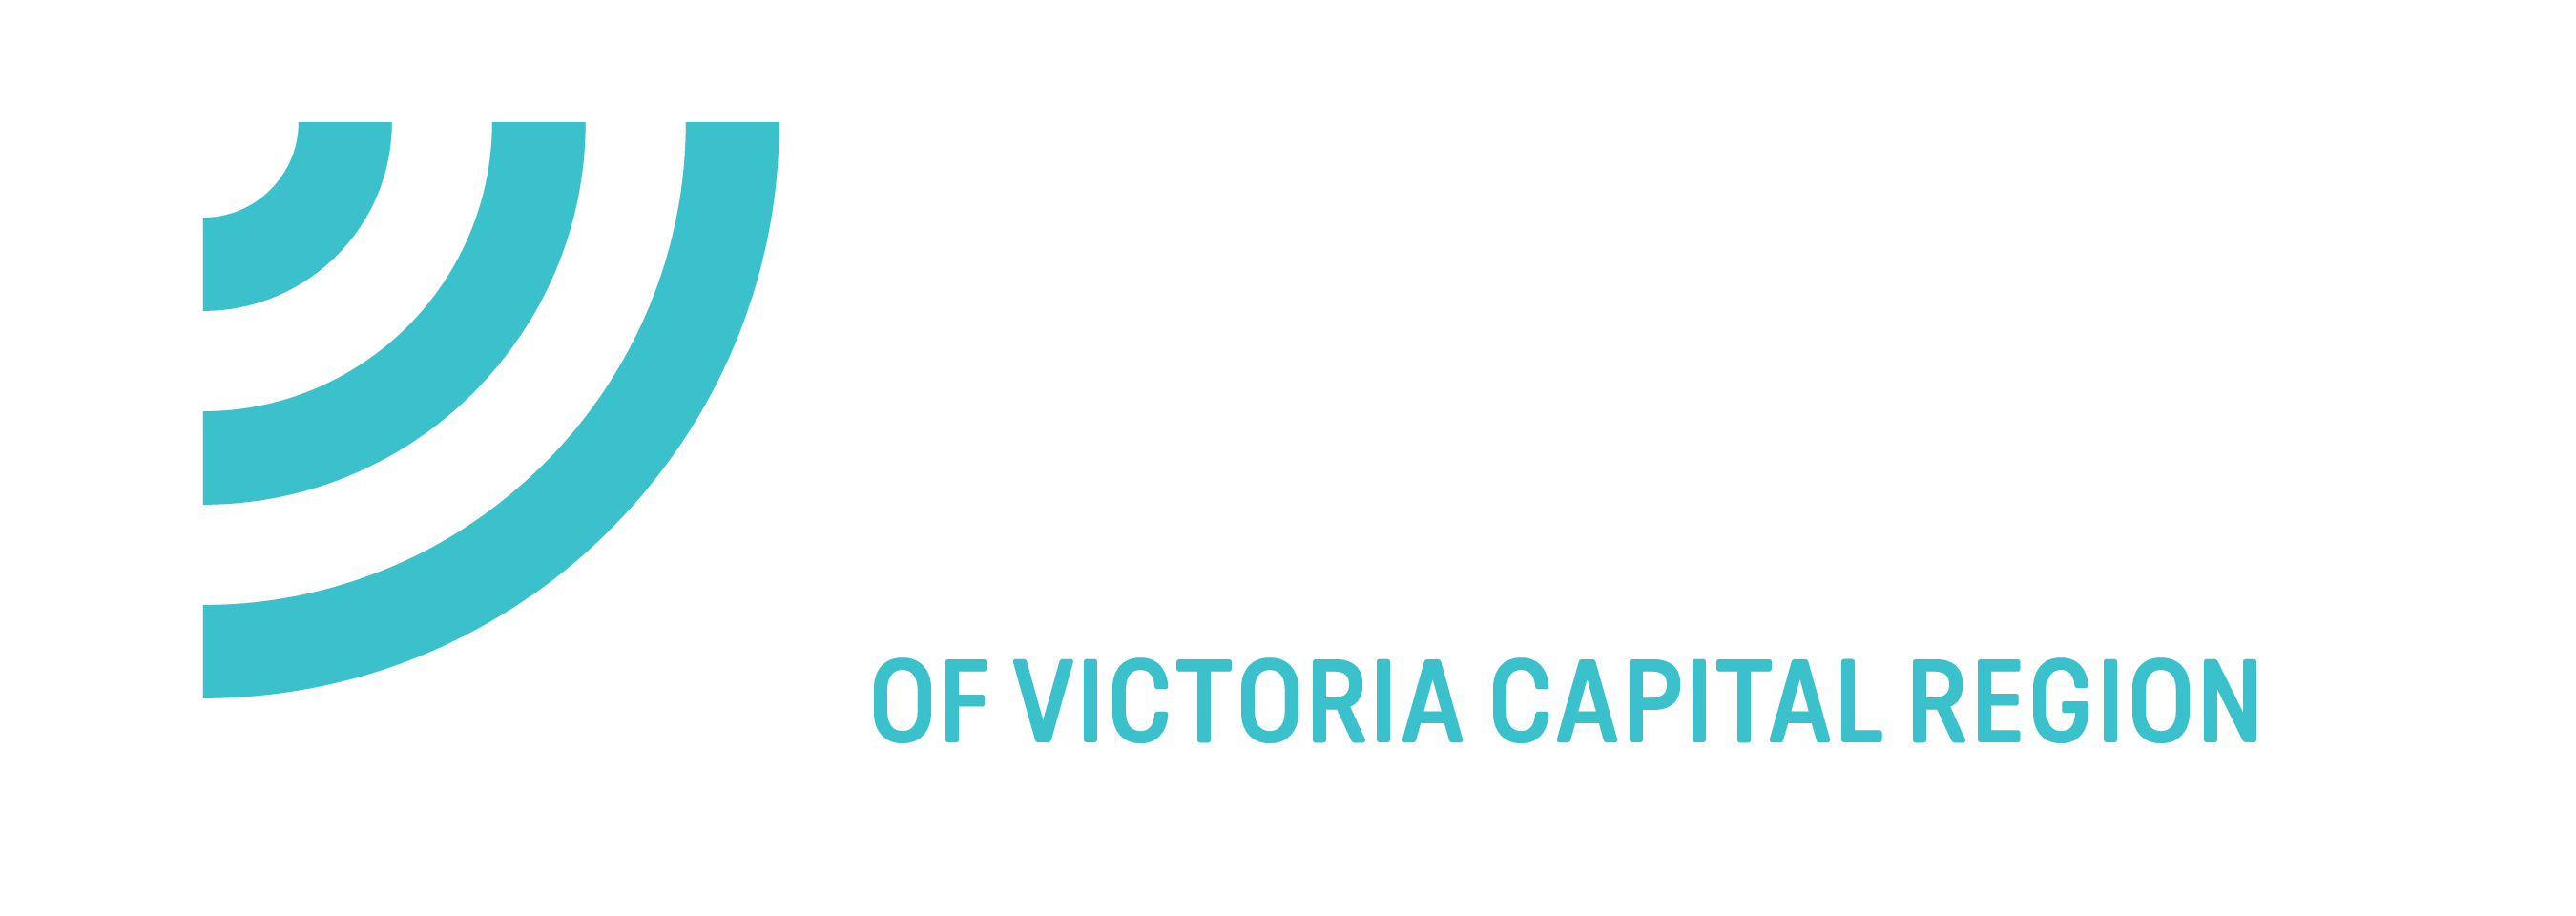 Westshore Donation Drop-off at Juan de Fuca Recreation Centre - Big Brothers Big Sisters of Victoria Capital Region